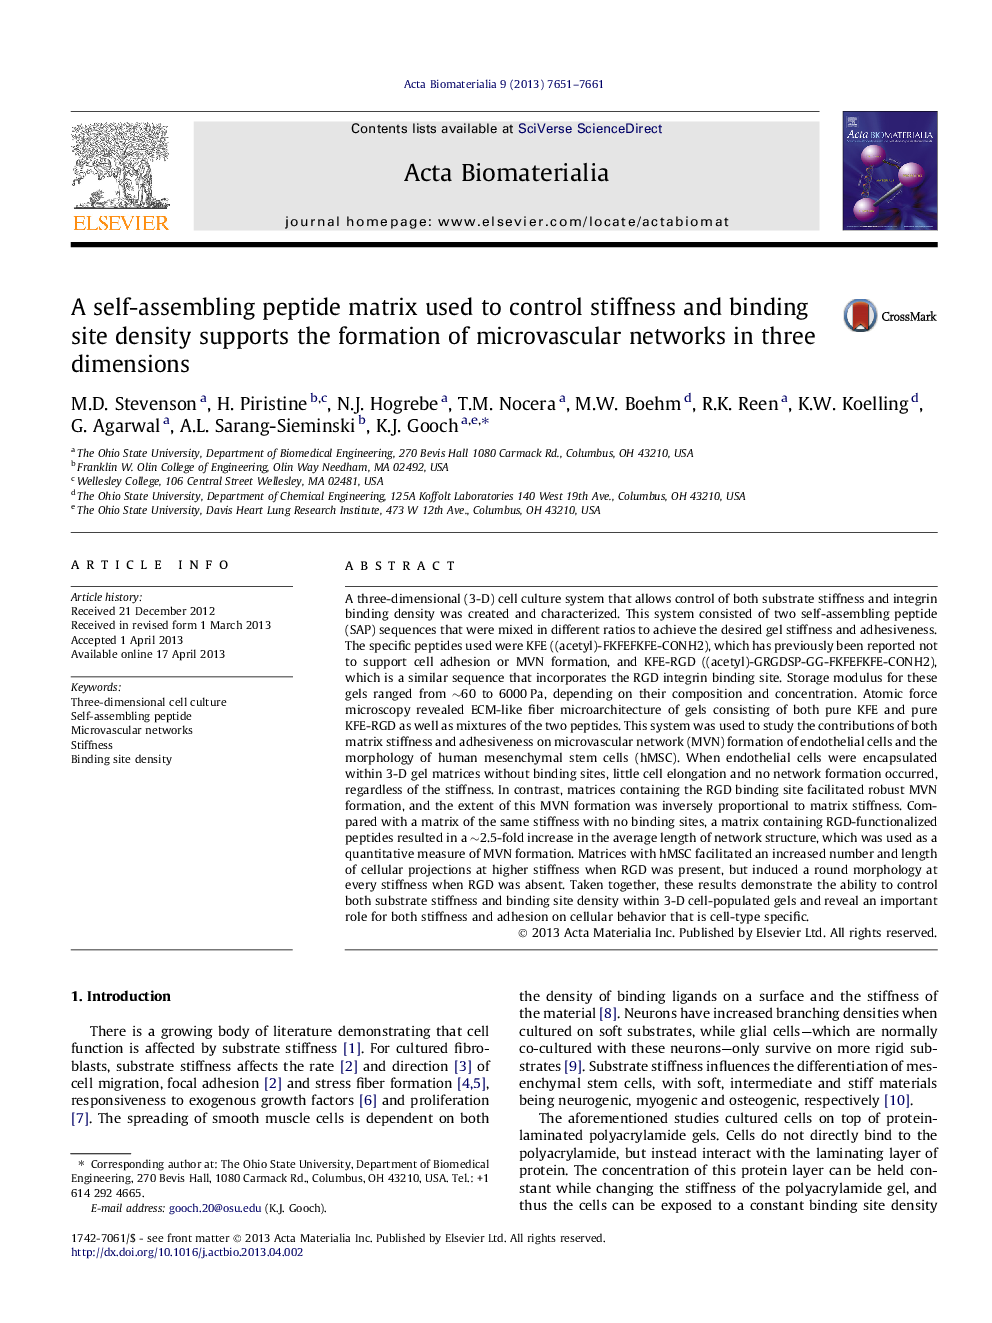 ماتریس پپتیدهای خودآموزی که برای کنترل سختی و چگالی محل اتصال استفاده می شود، از تشکیل شبکه های میکروکوزالی در سه بعد پشتیبانی می کند 